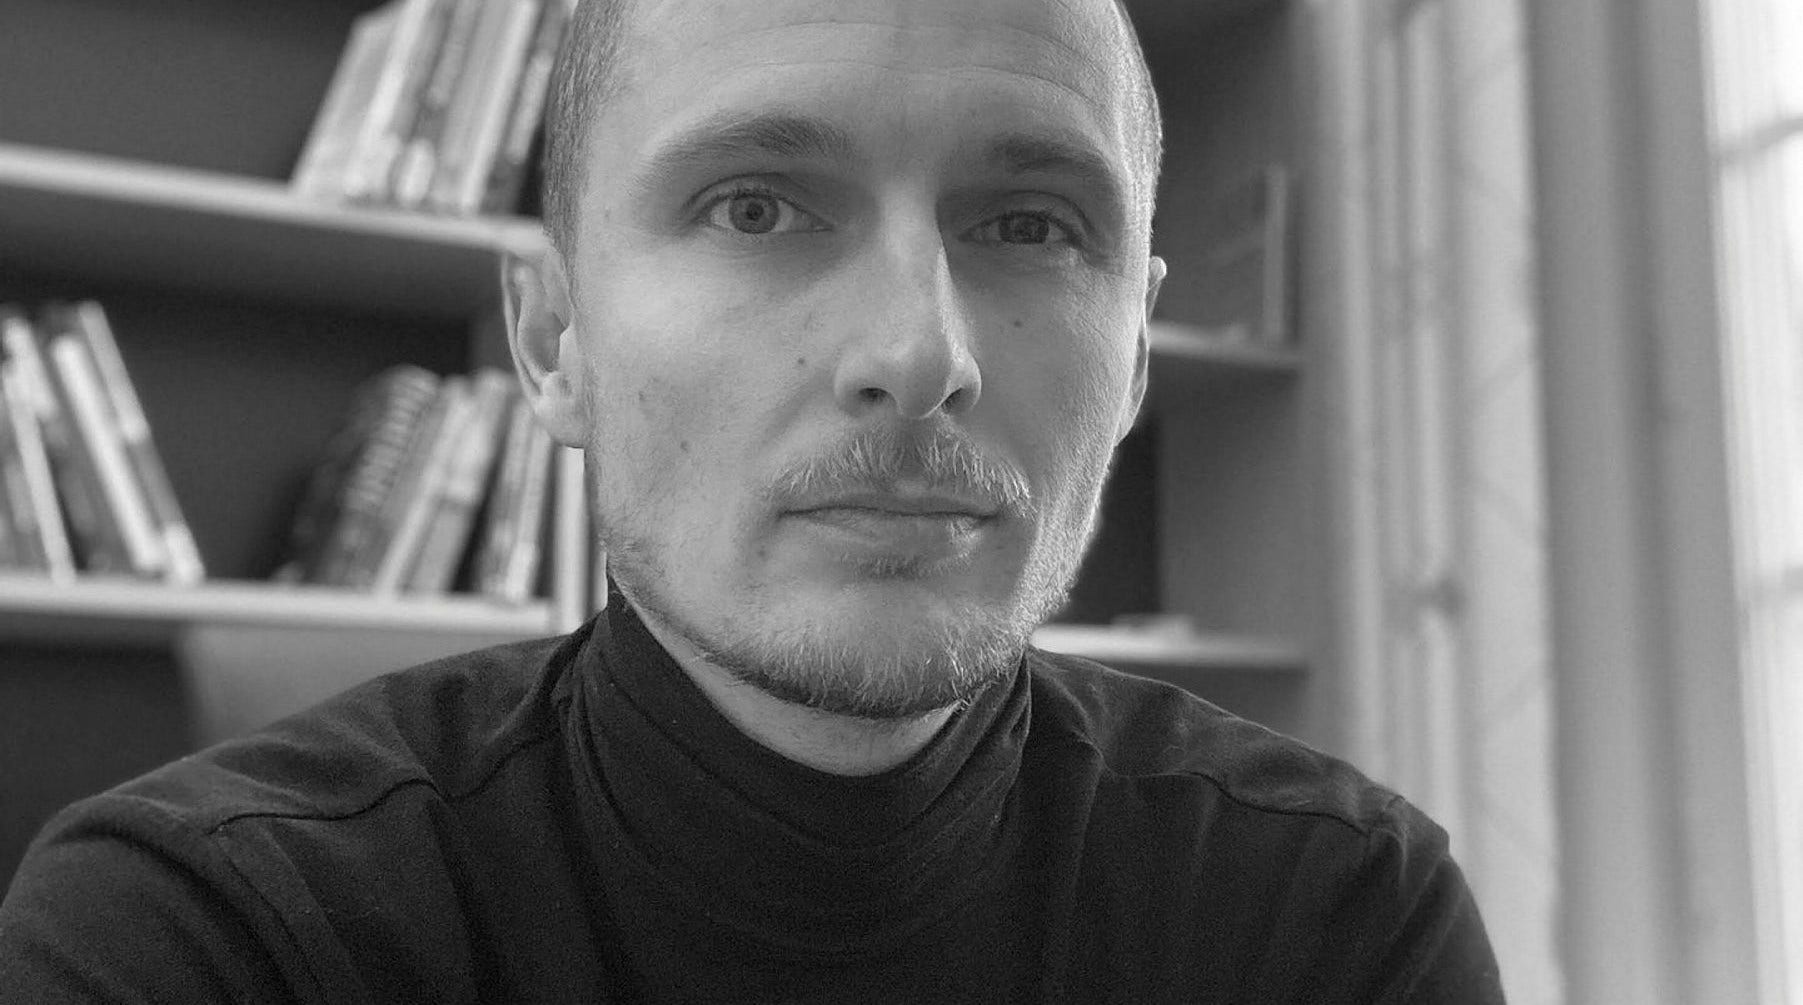 Den danske kriminologen David Sausdal jobber ved Lunds universitet.  Det er allerede kjent at kriminelle samarbeider med det etablerte samfunnet, men 